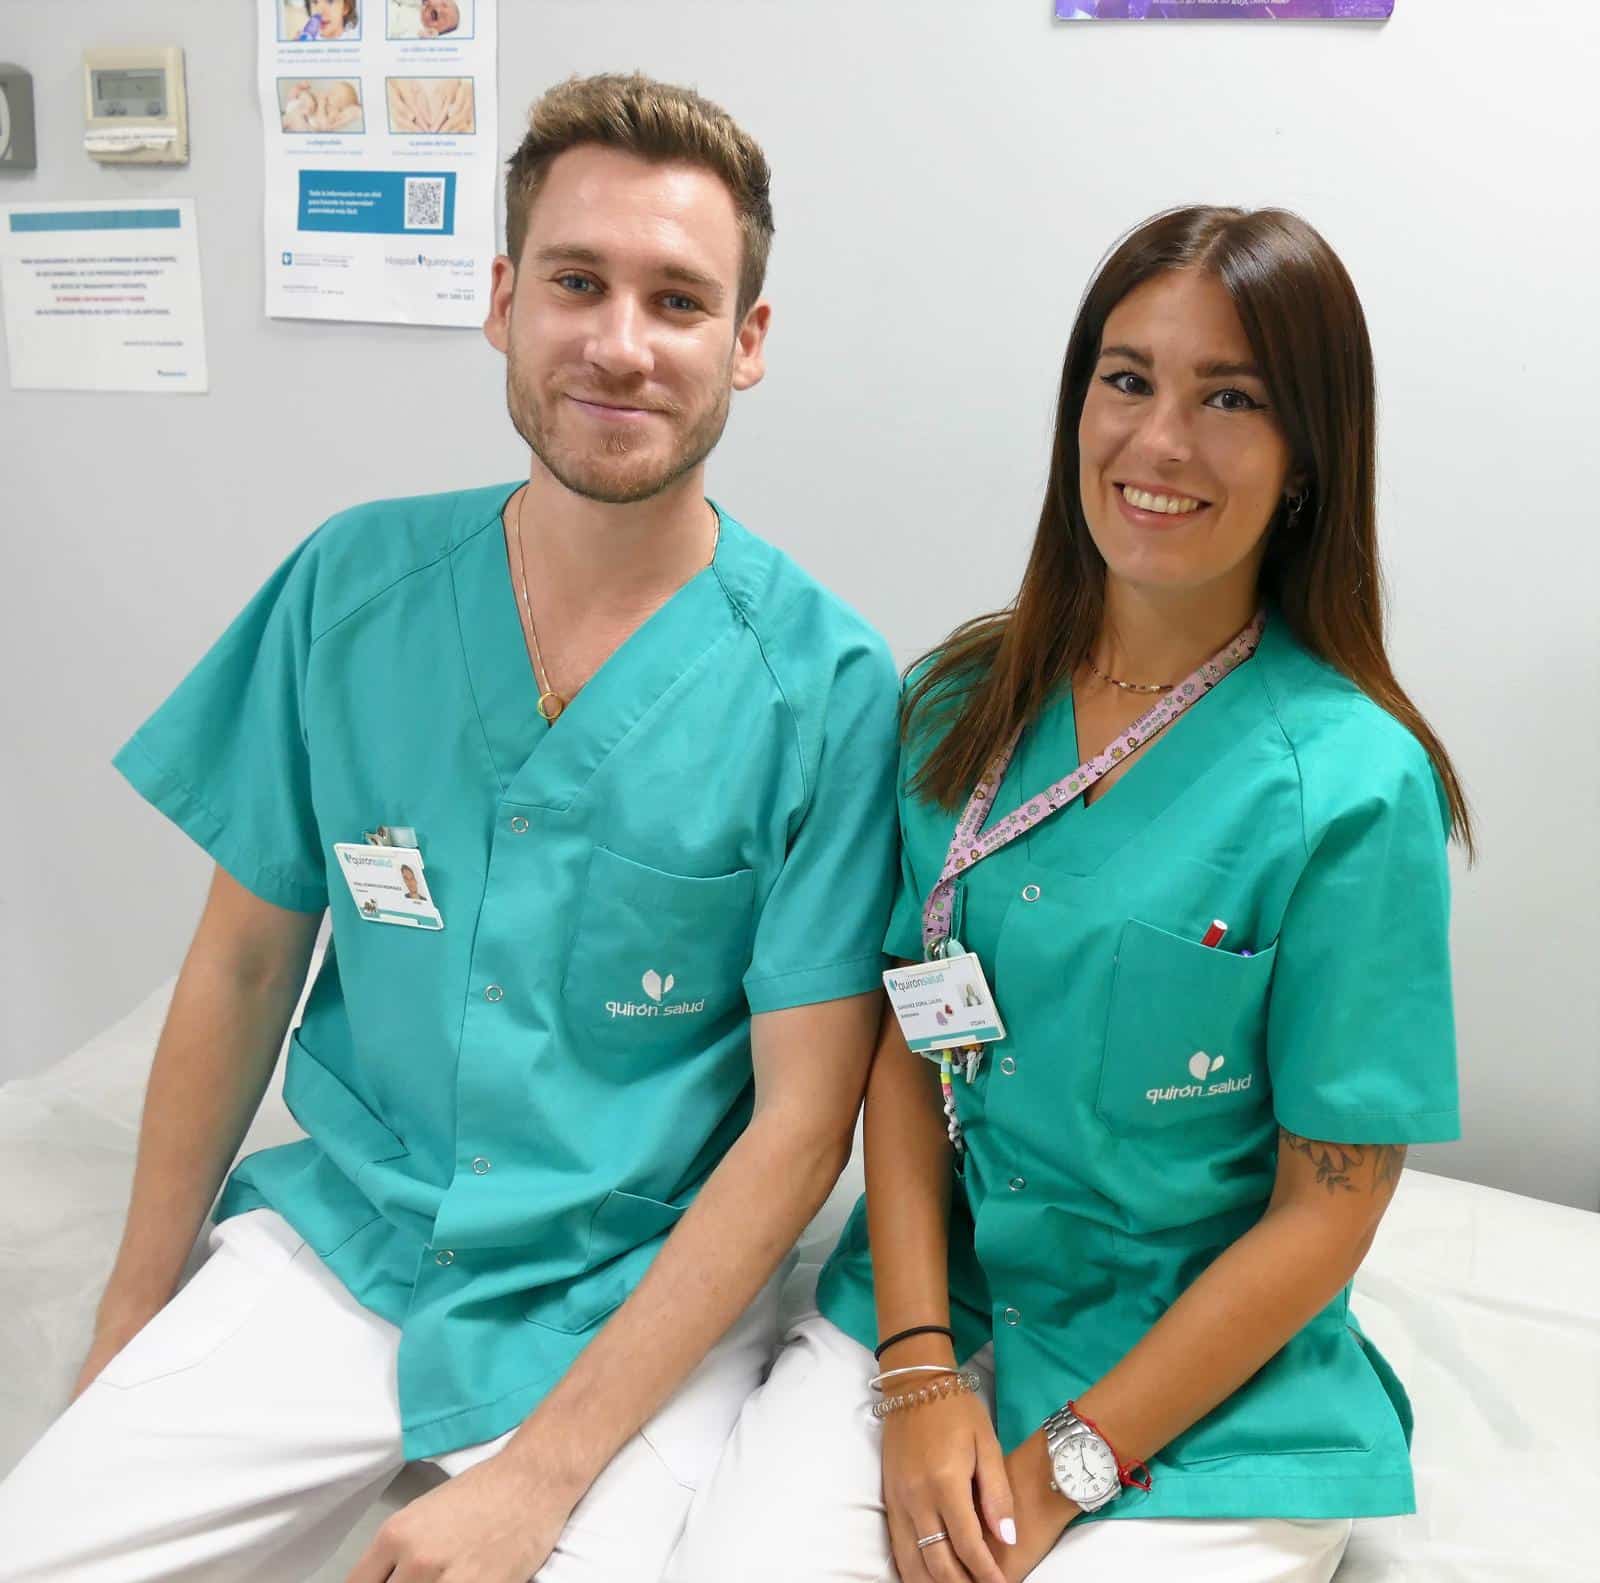 Vidal Domínguez y Laura Sánchez, enfermeros pediátricos del Hospital Quirónsalud San José de Madrid.